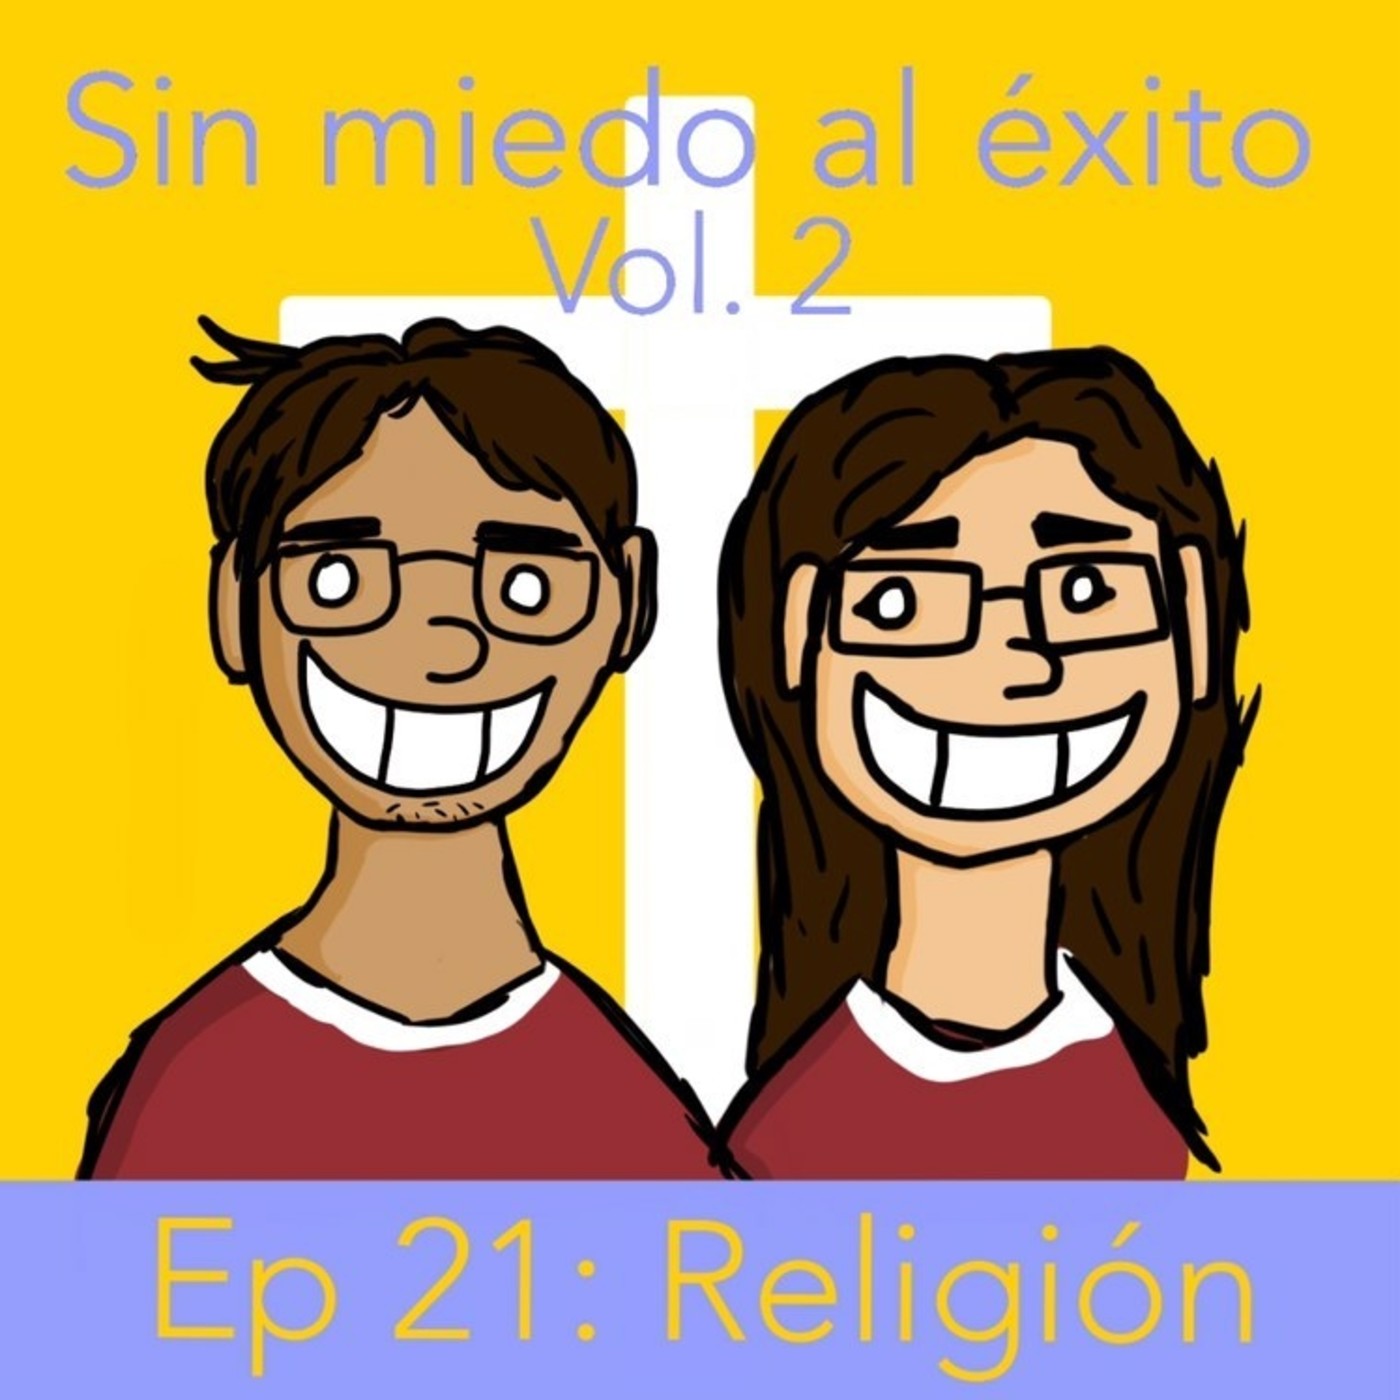 Ep 21: religión